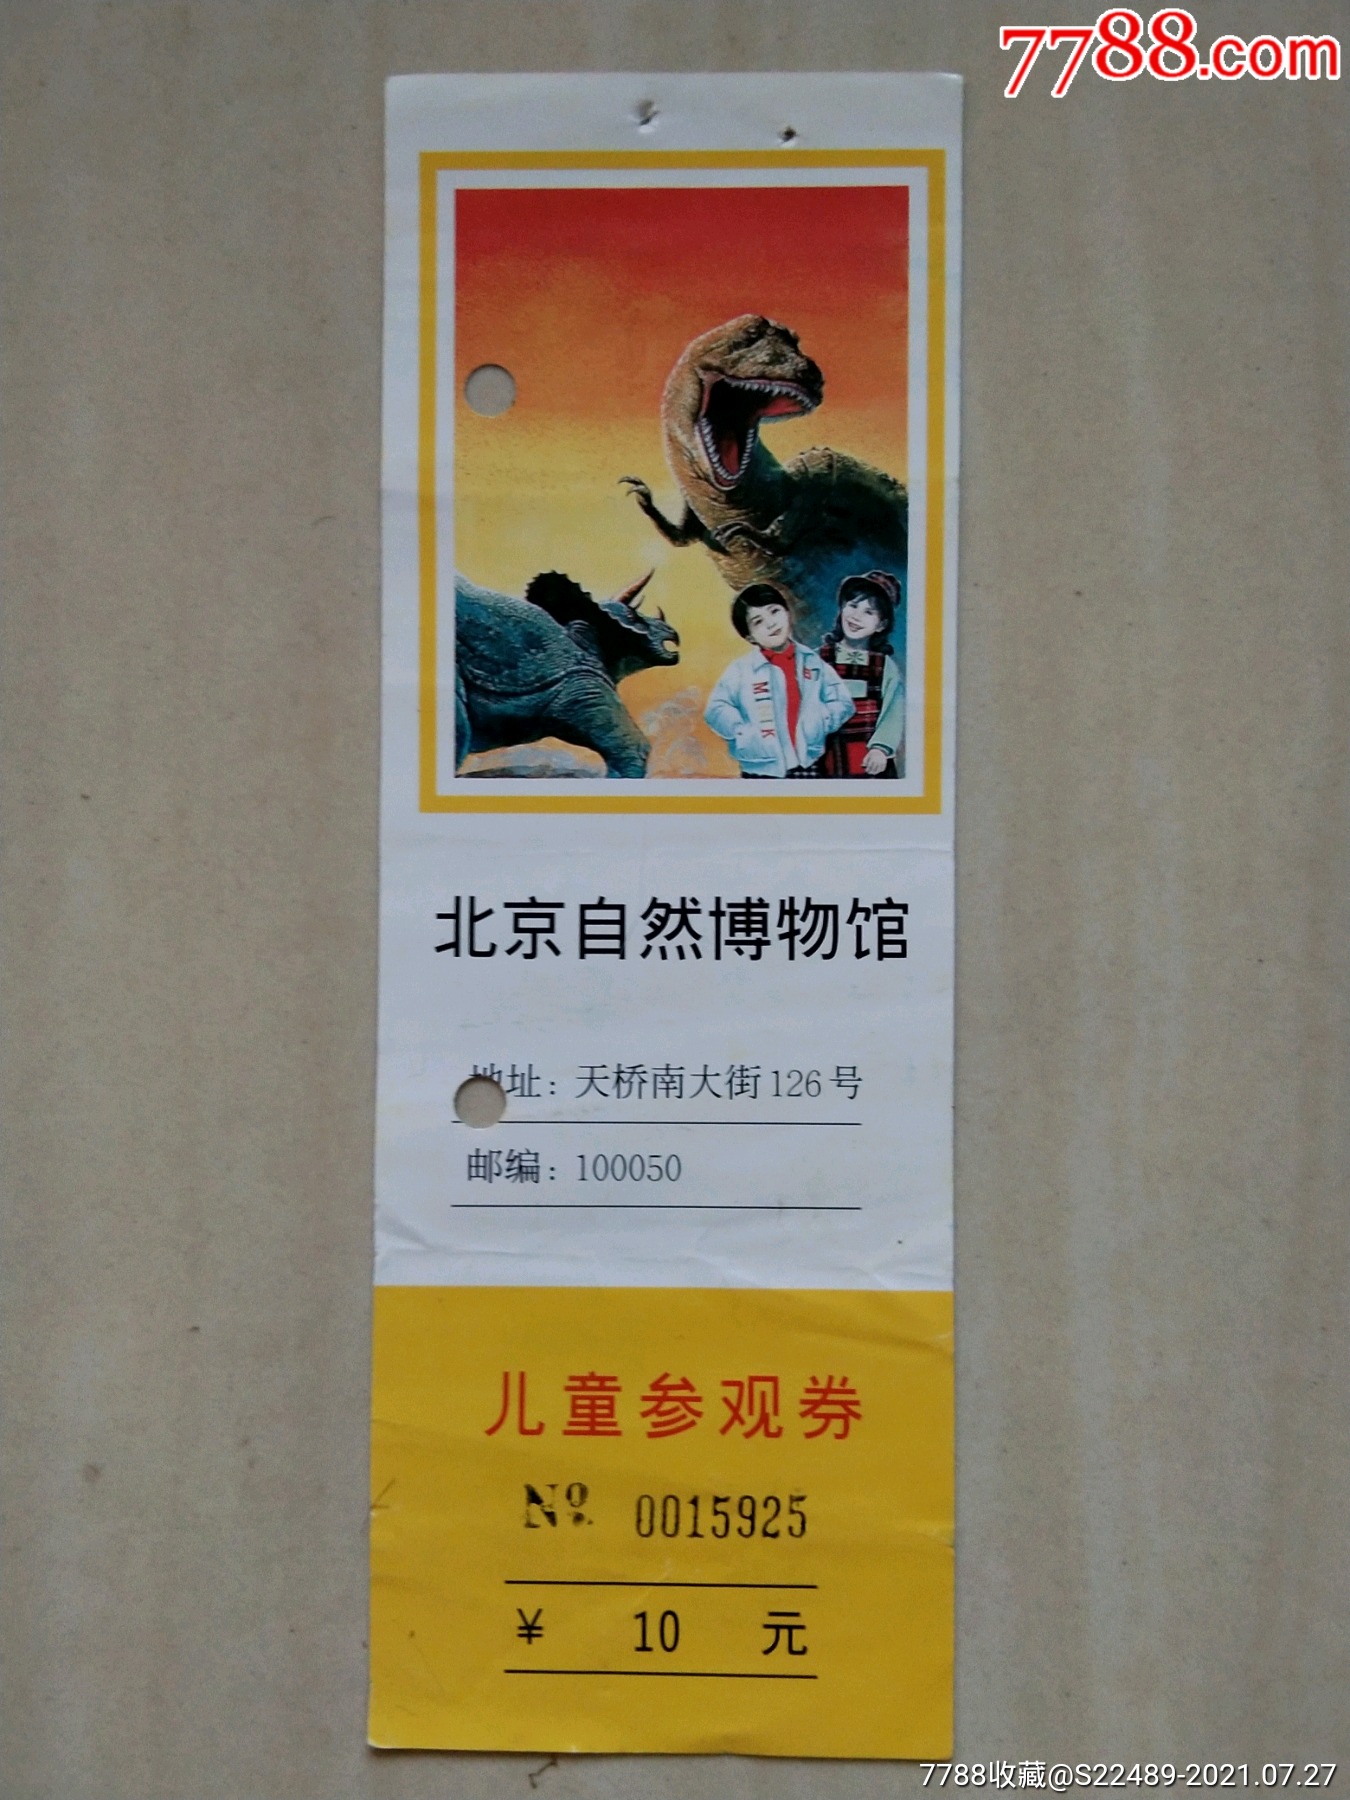 北京自然博物馆-价格:1元-se81671806-旅游景点门票-零售-7788收藏